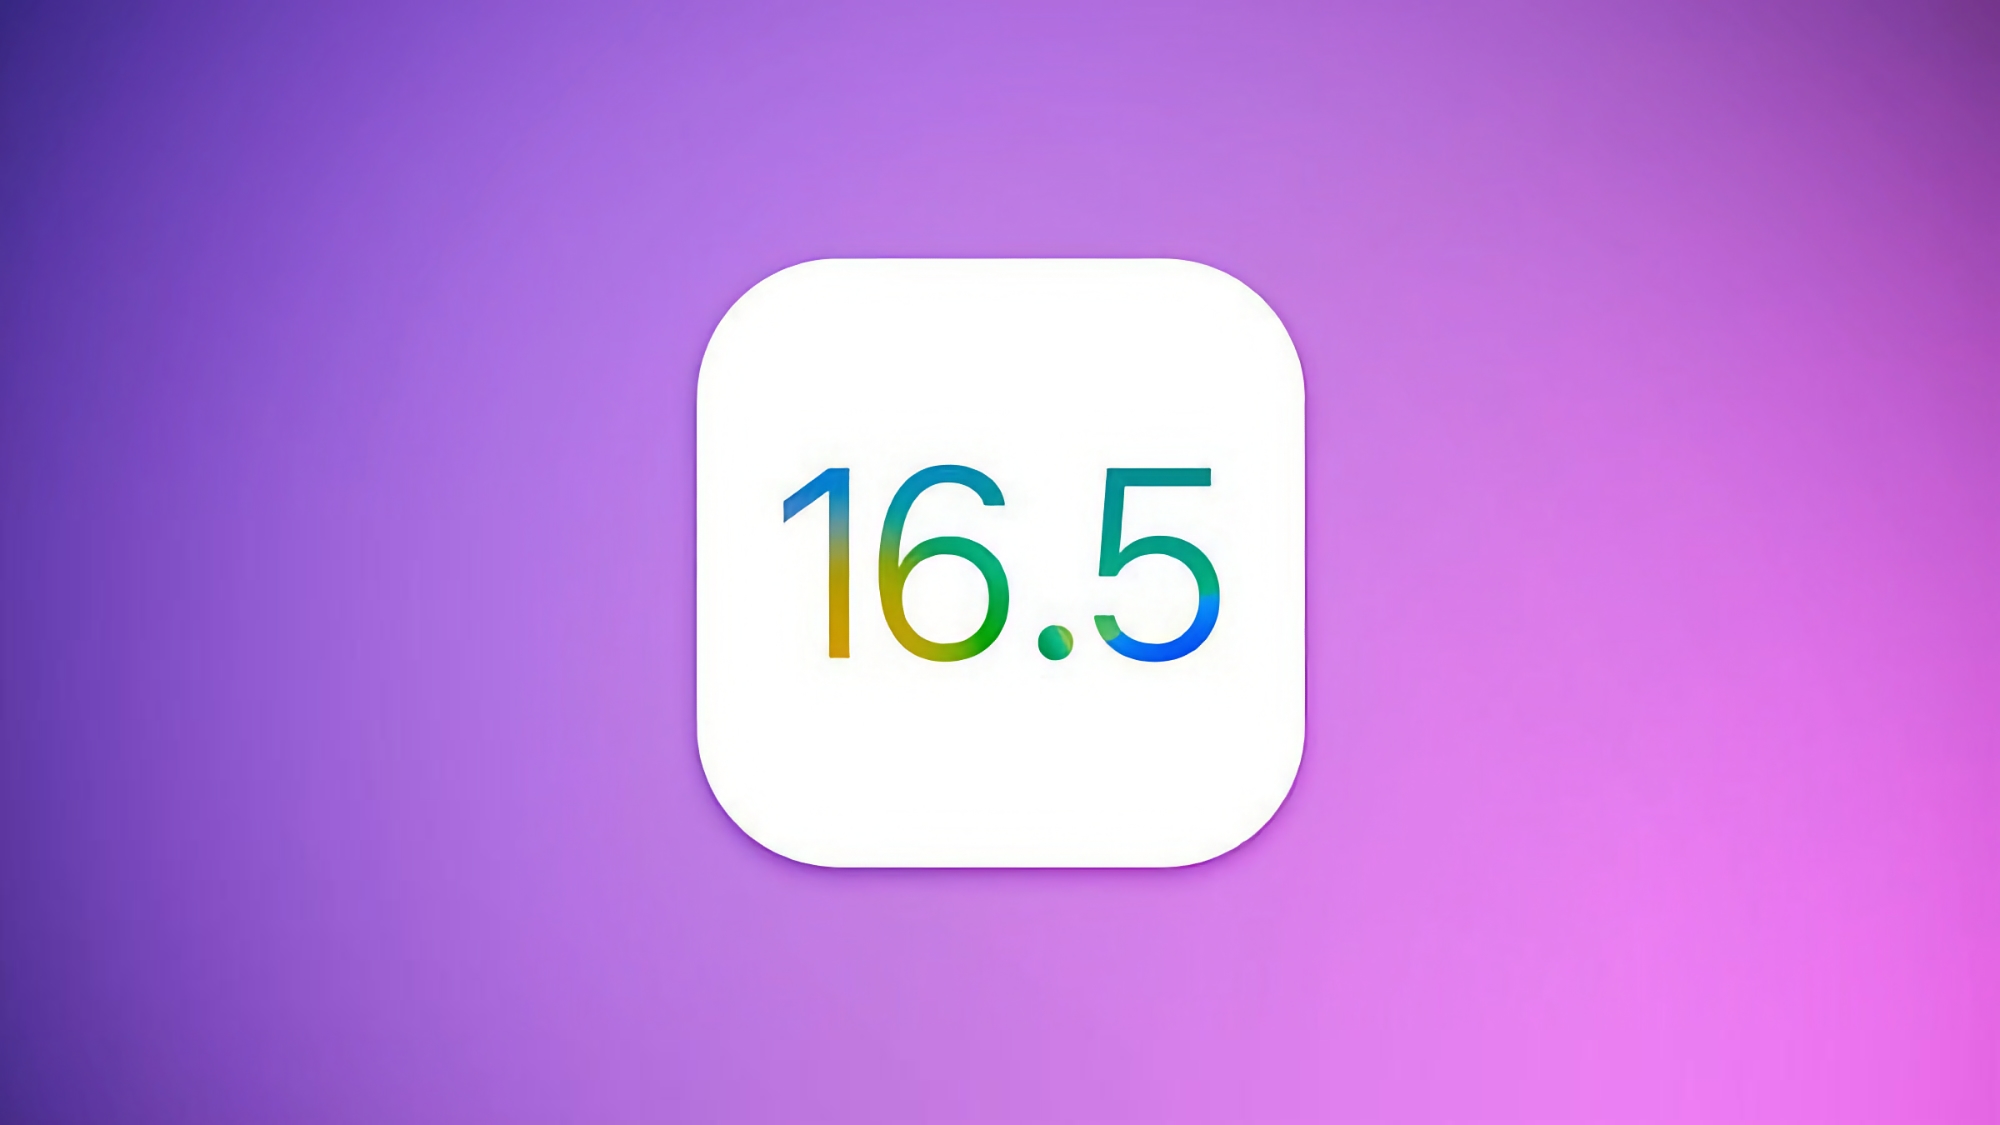 Apple udostępniło przedpremierową wersję systemu iOS 16.5